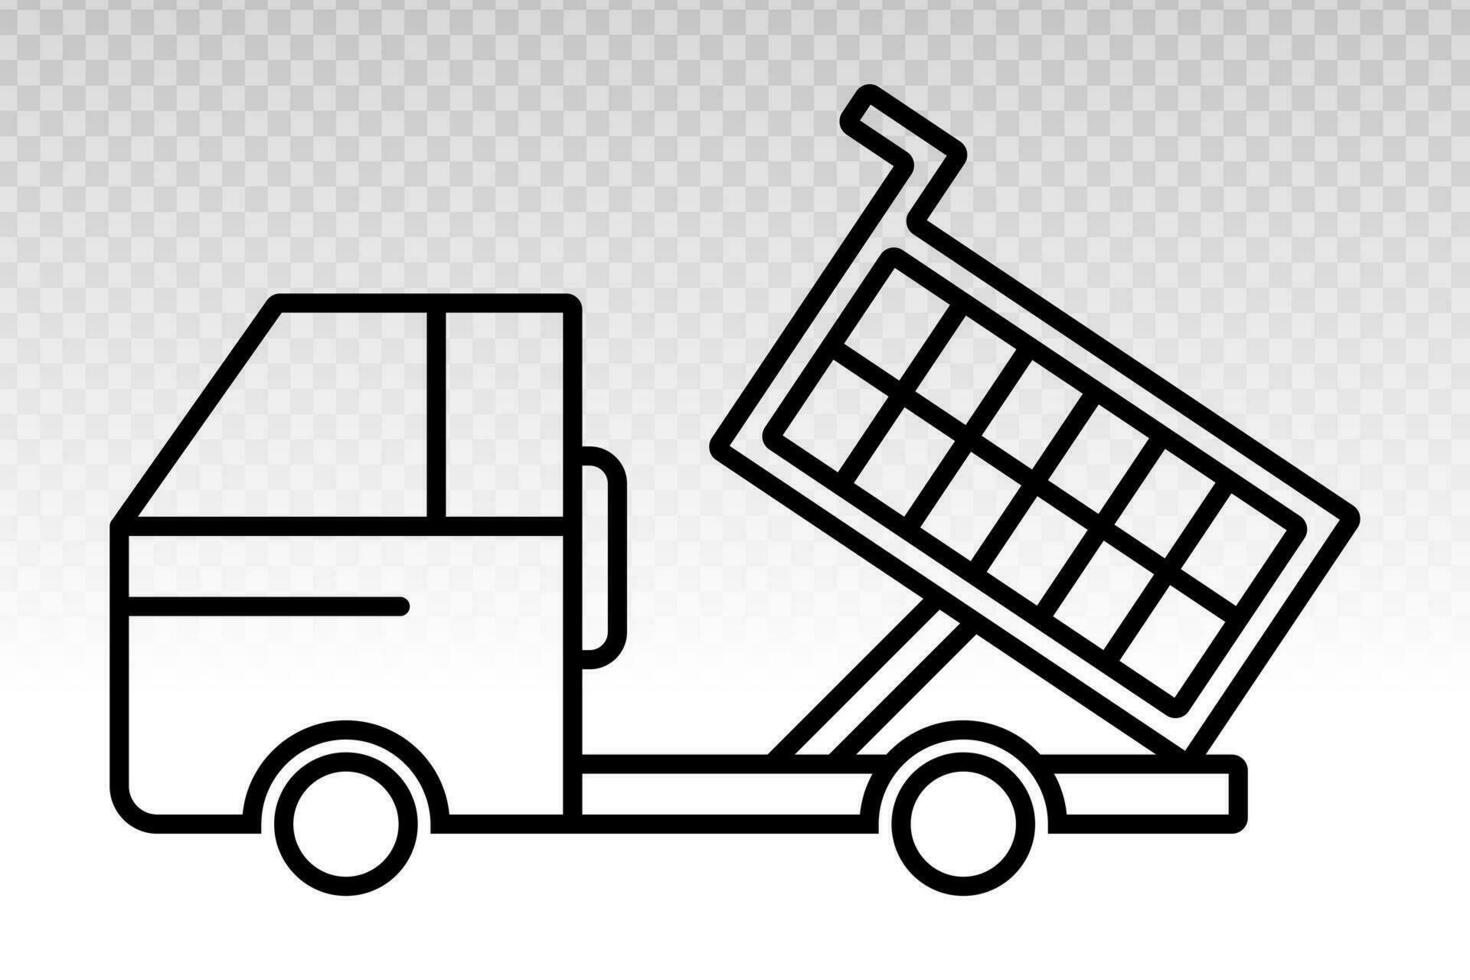 ribaltabile camion o cumulo di rifiuti camion - pesante attrezzatura linea arte icona per applicazioni o siti web vettore